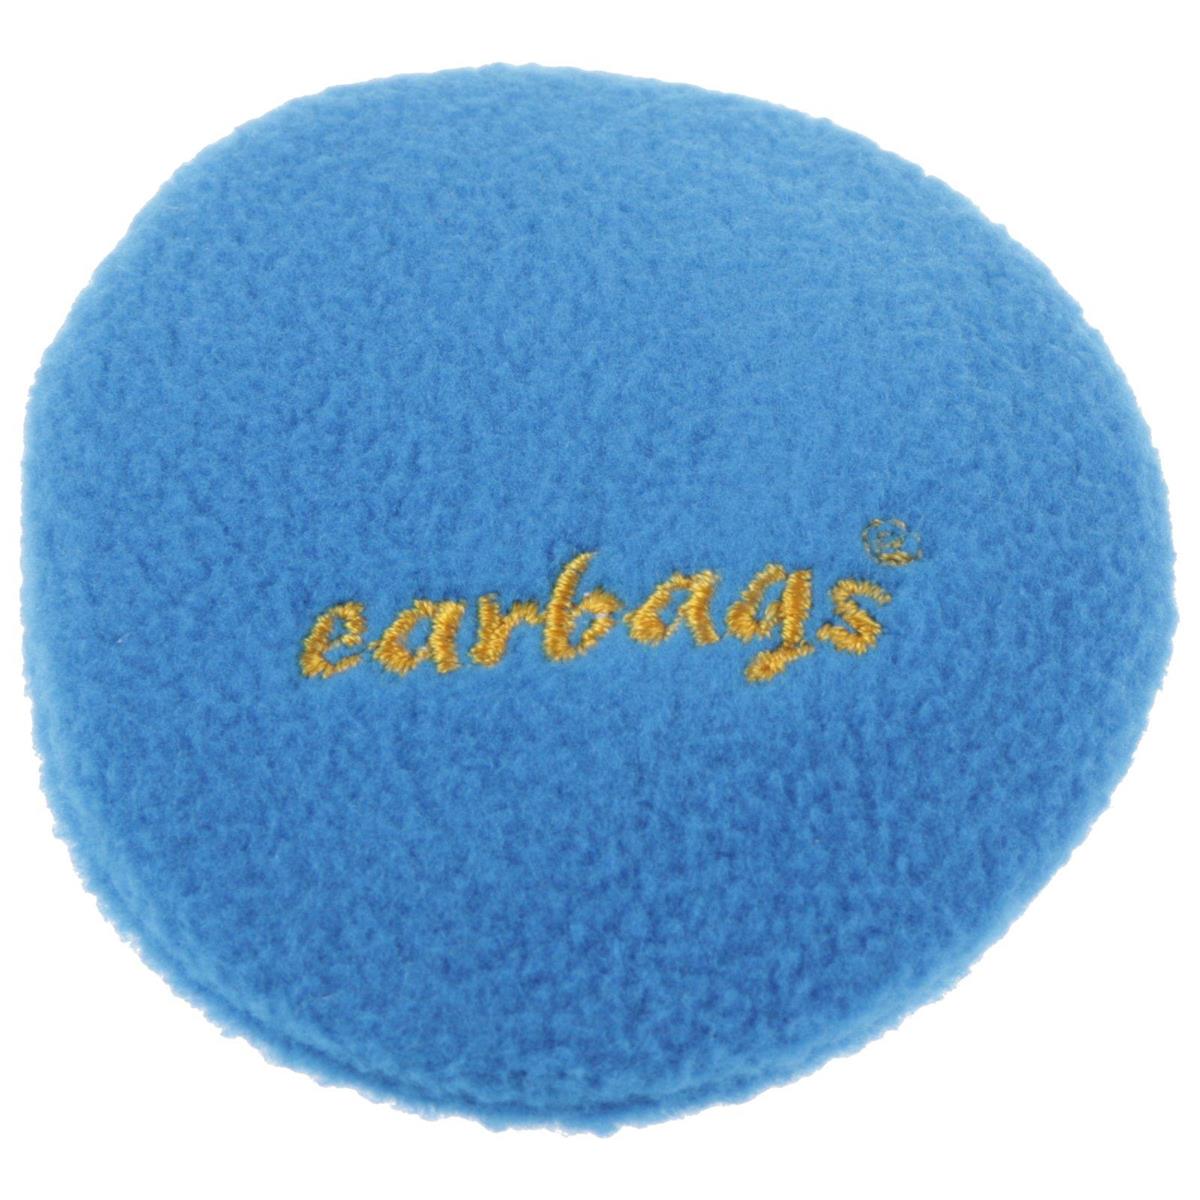 Earbags Ear warmers heat embossed logo.